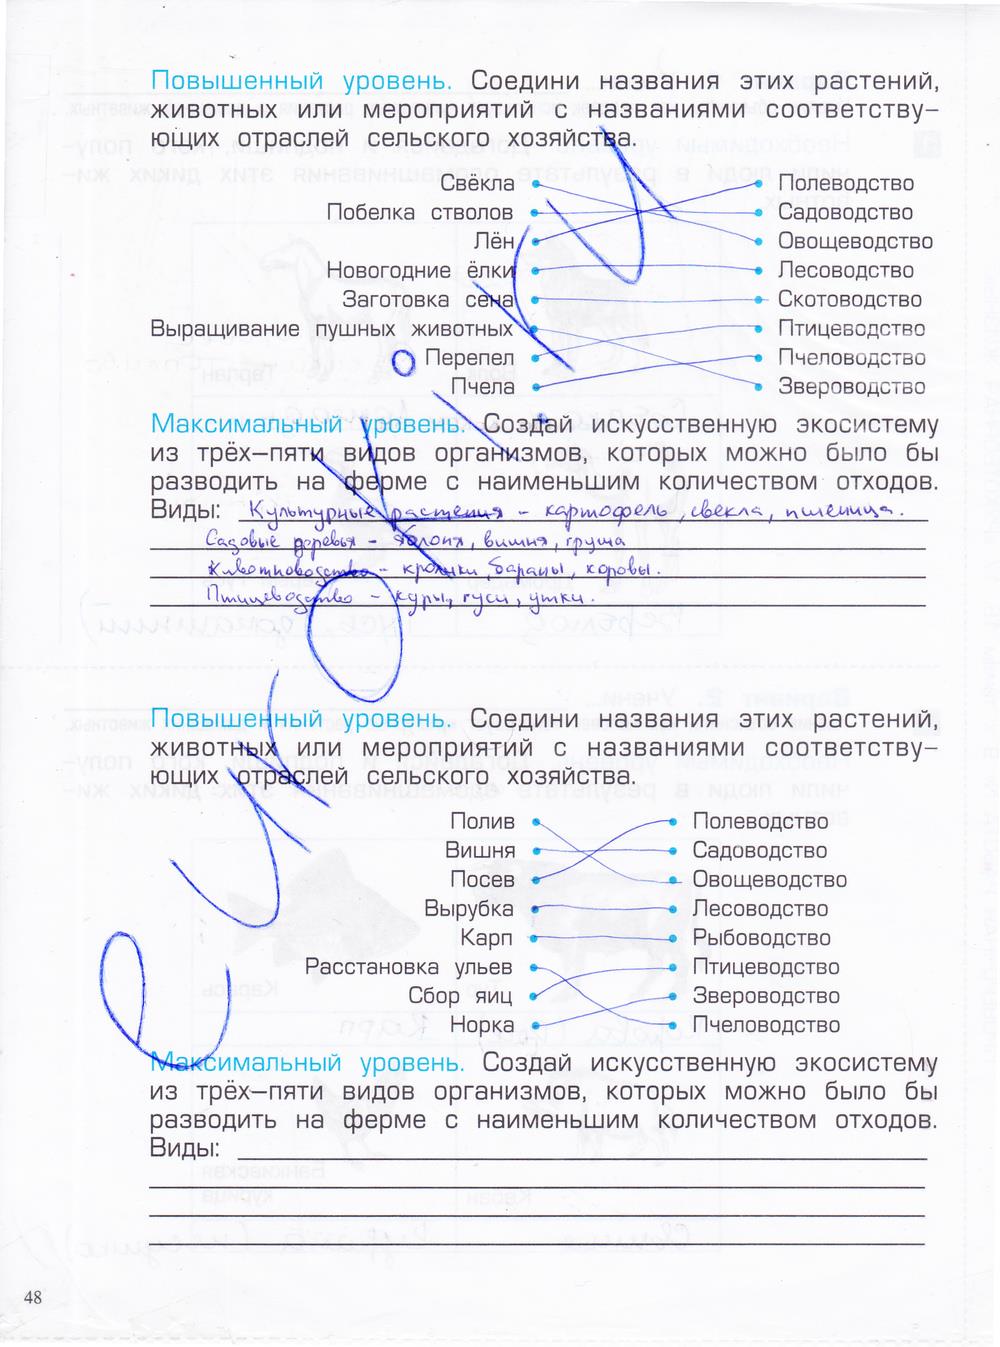 гдз 4 класс проверочные и контрольные работы часть 1 страница 48 окружающий мир Вахрушев, Бурский, Родыгина